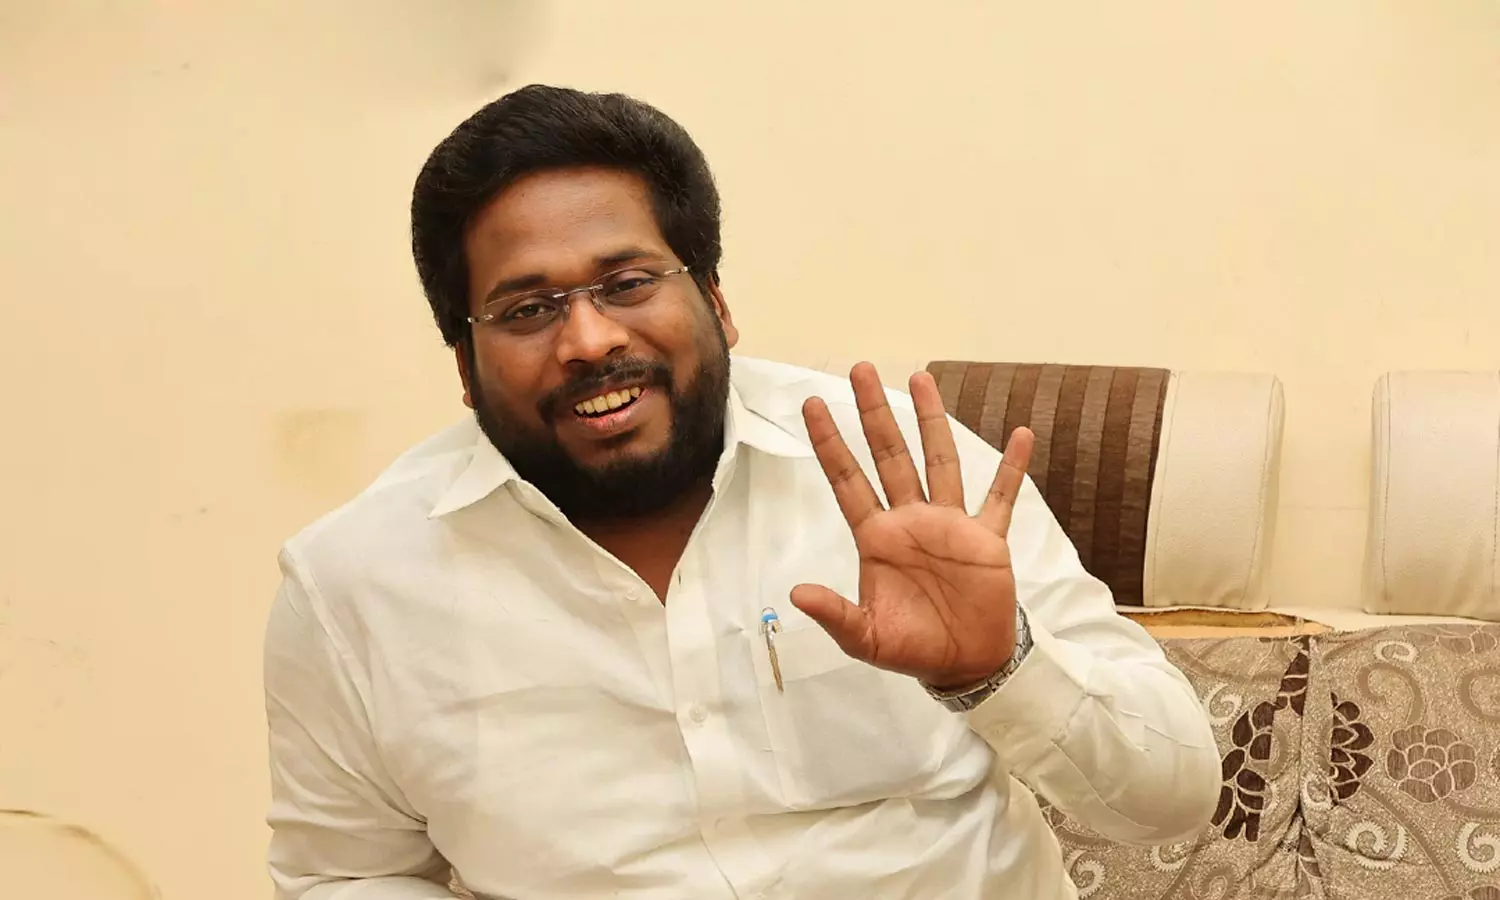 பாஜக உடனான உறவை முடித்து கொள்கிறேன்- திருச்சி சூர்யா சிவா அதிரடி டுவீட் |  Tamil news Trichy Surya Siva quits BJP